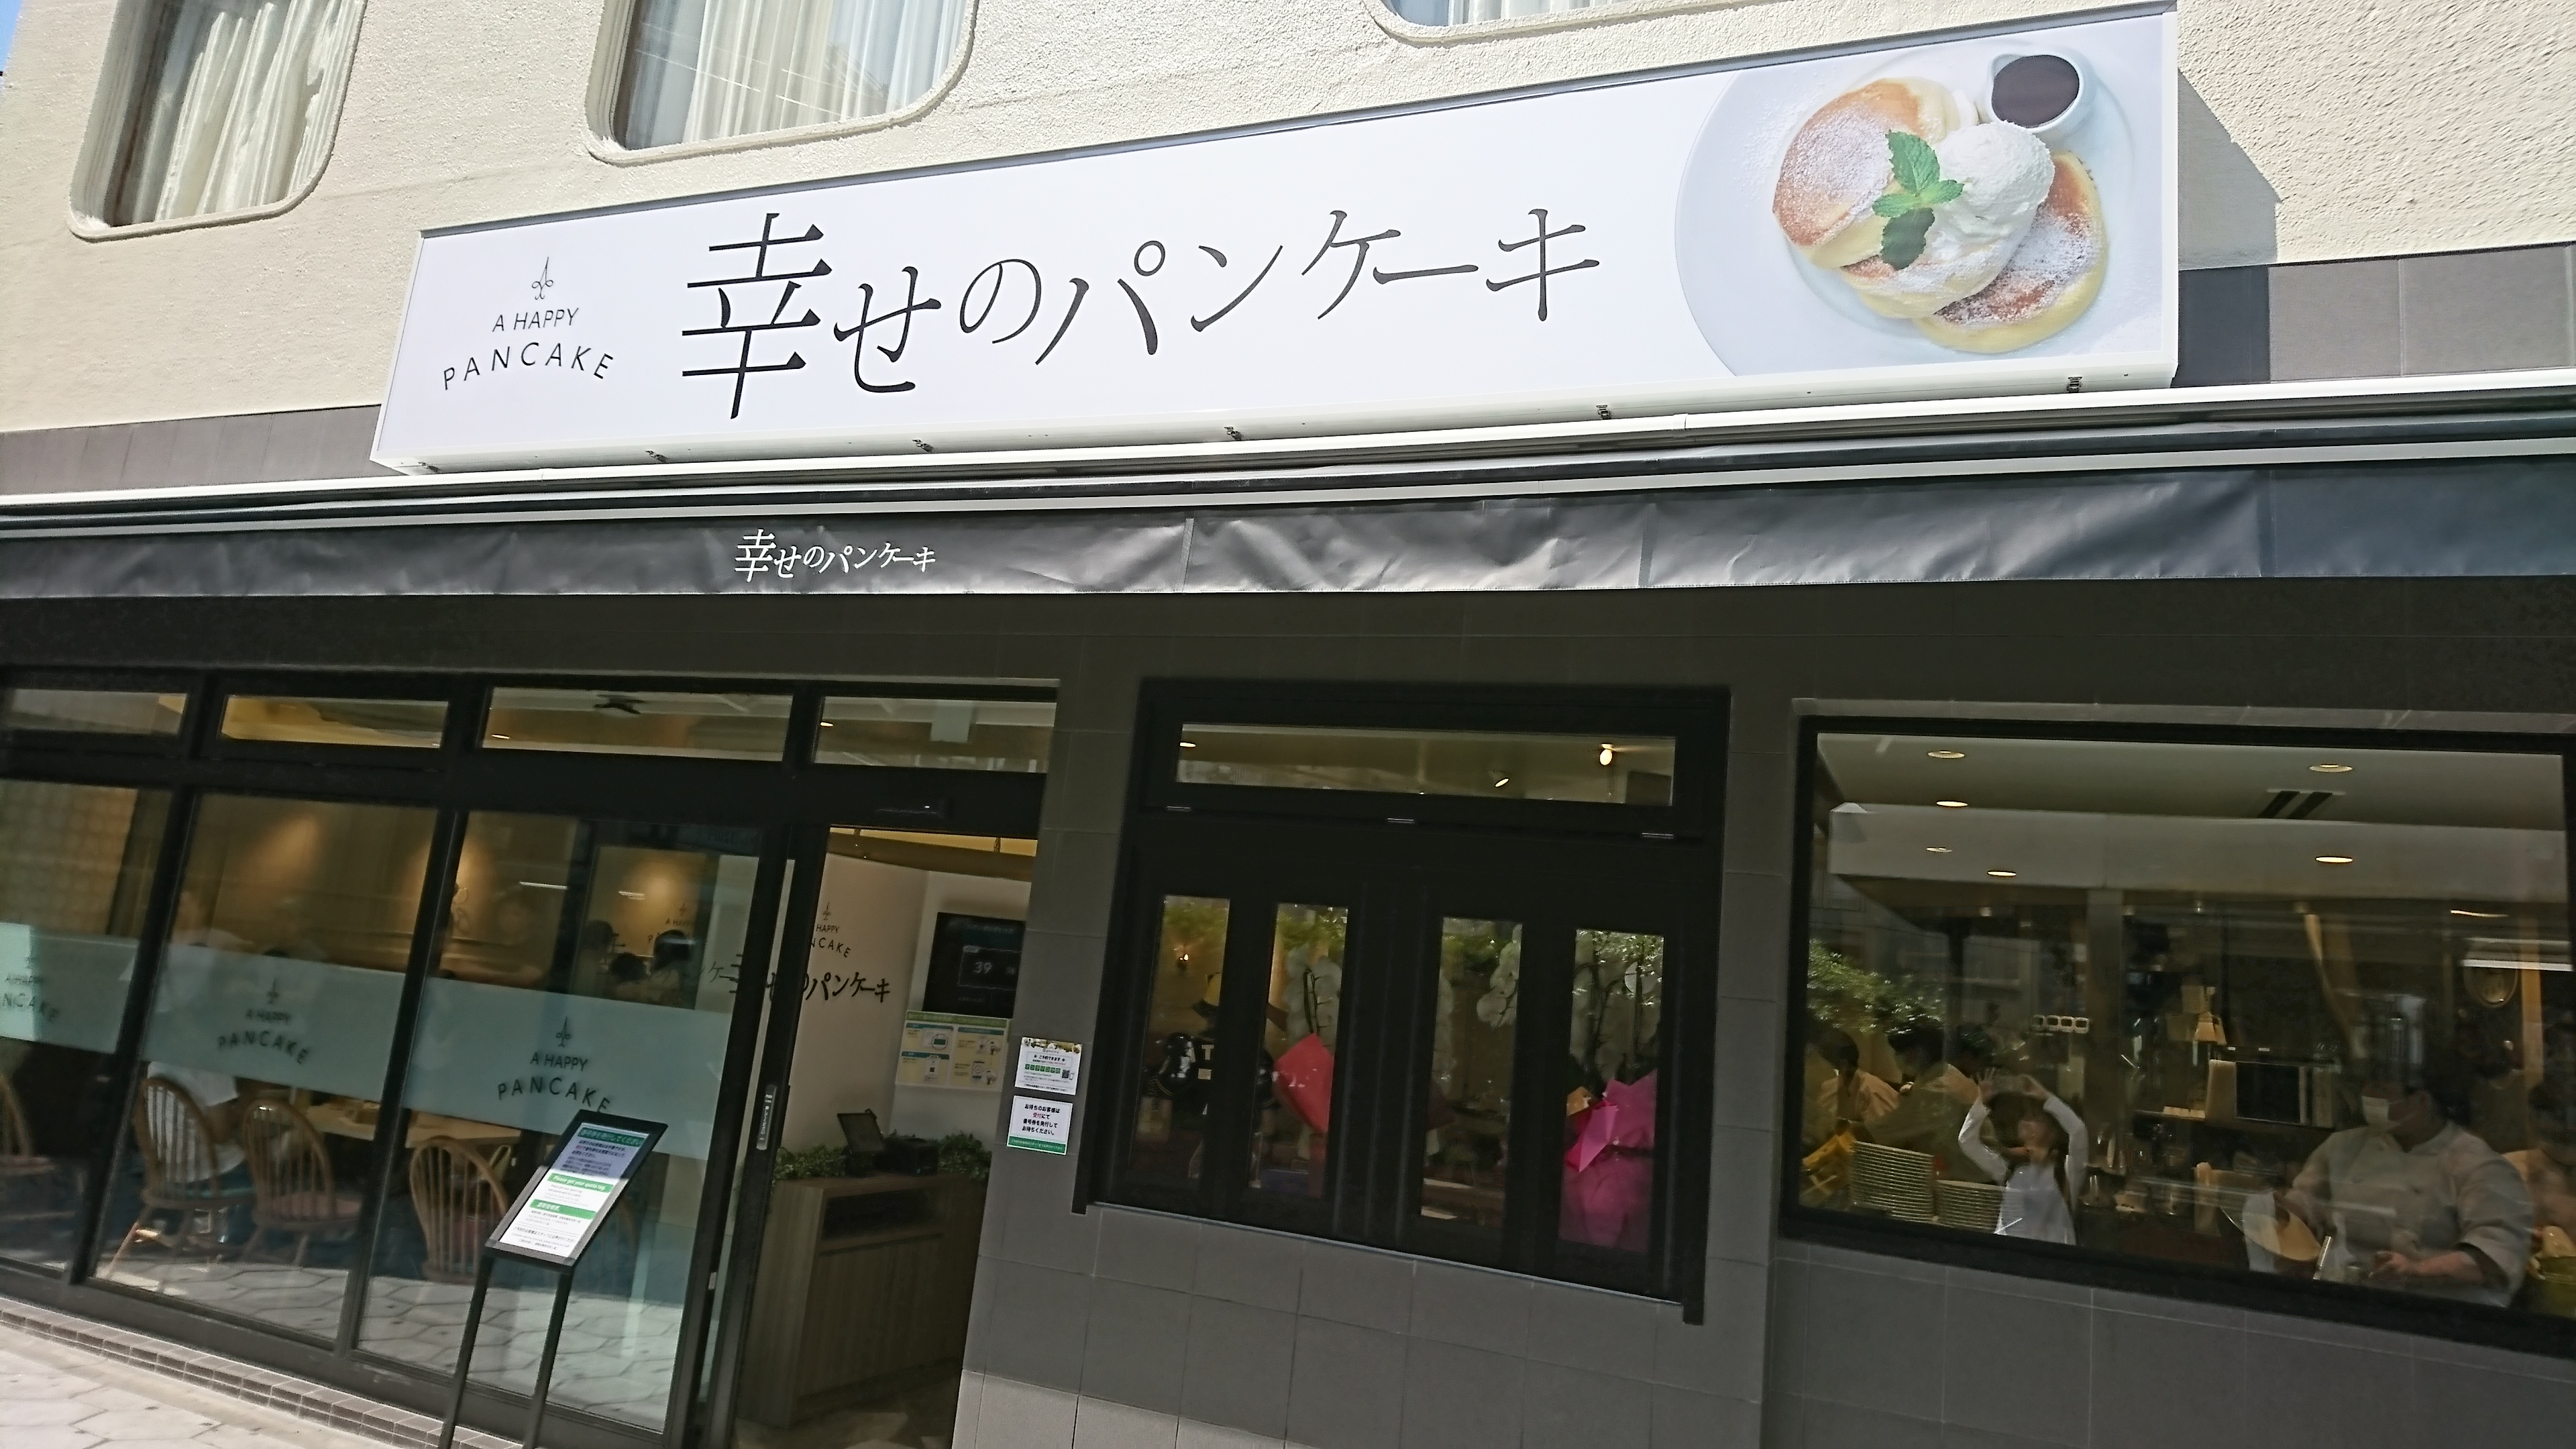 梅田に2店舗目となる 幸せのパンケーキ 梅田阪急東通り店 がオープンした 6 23 大阪キタじゃーなる